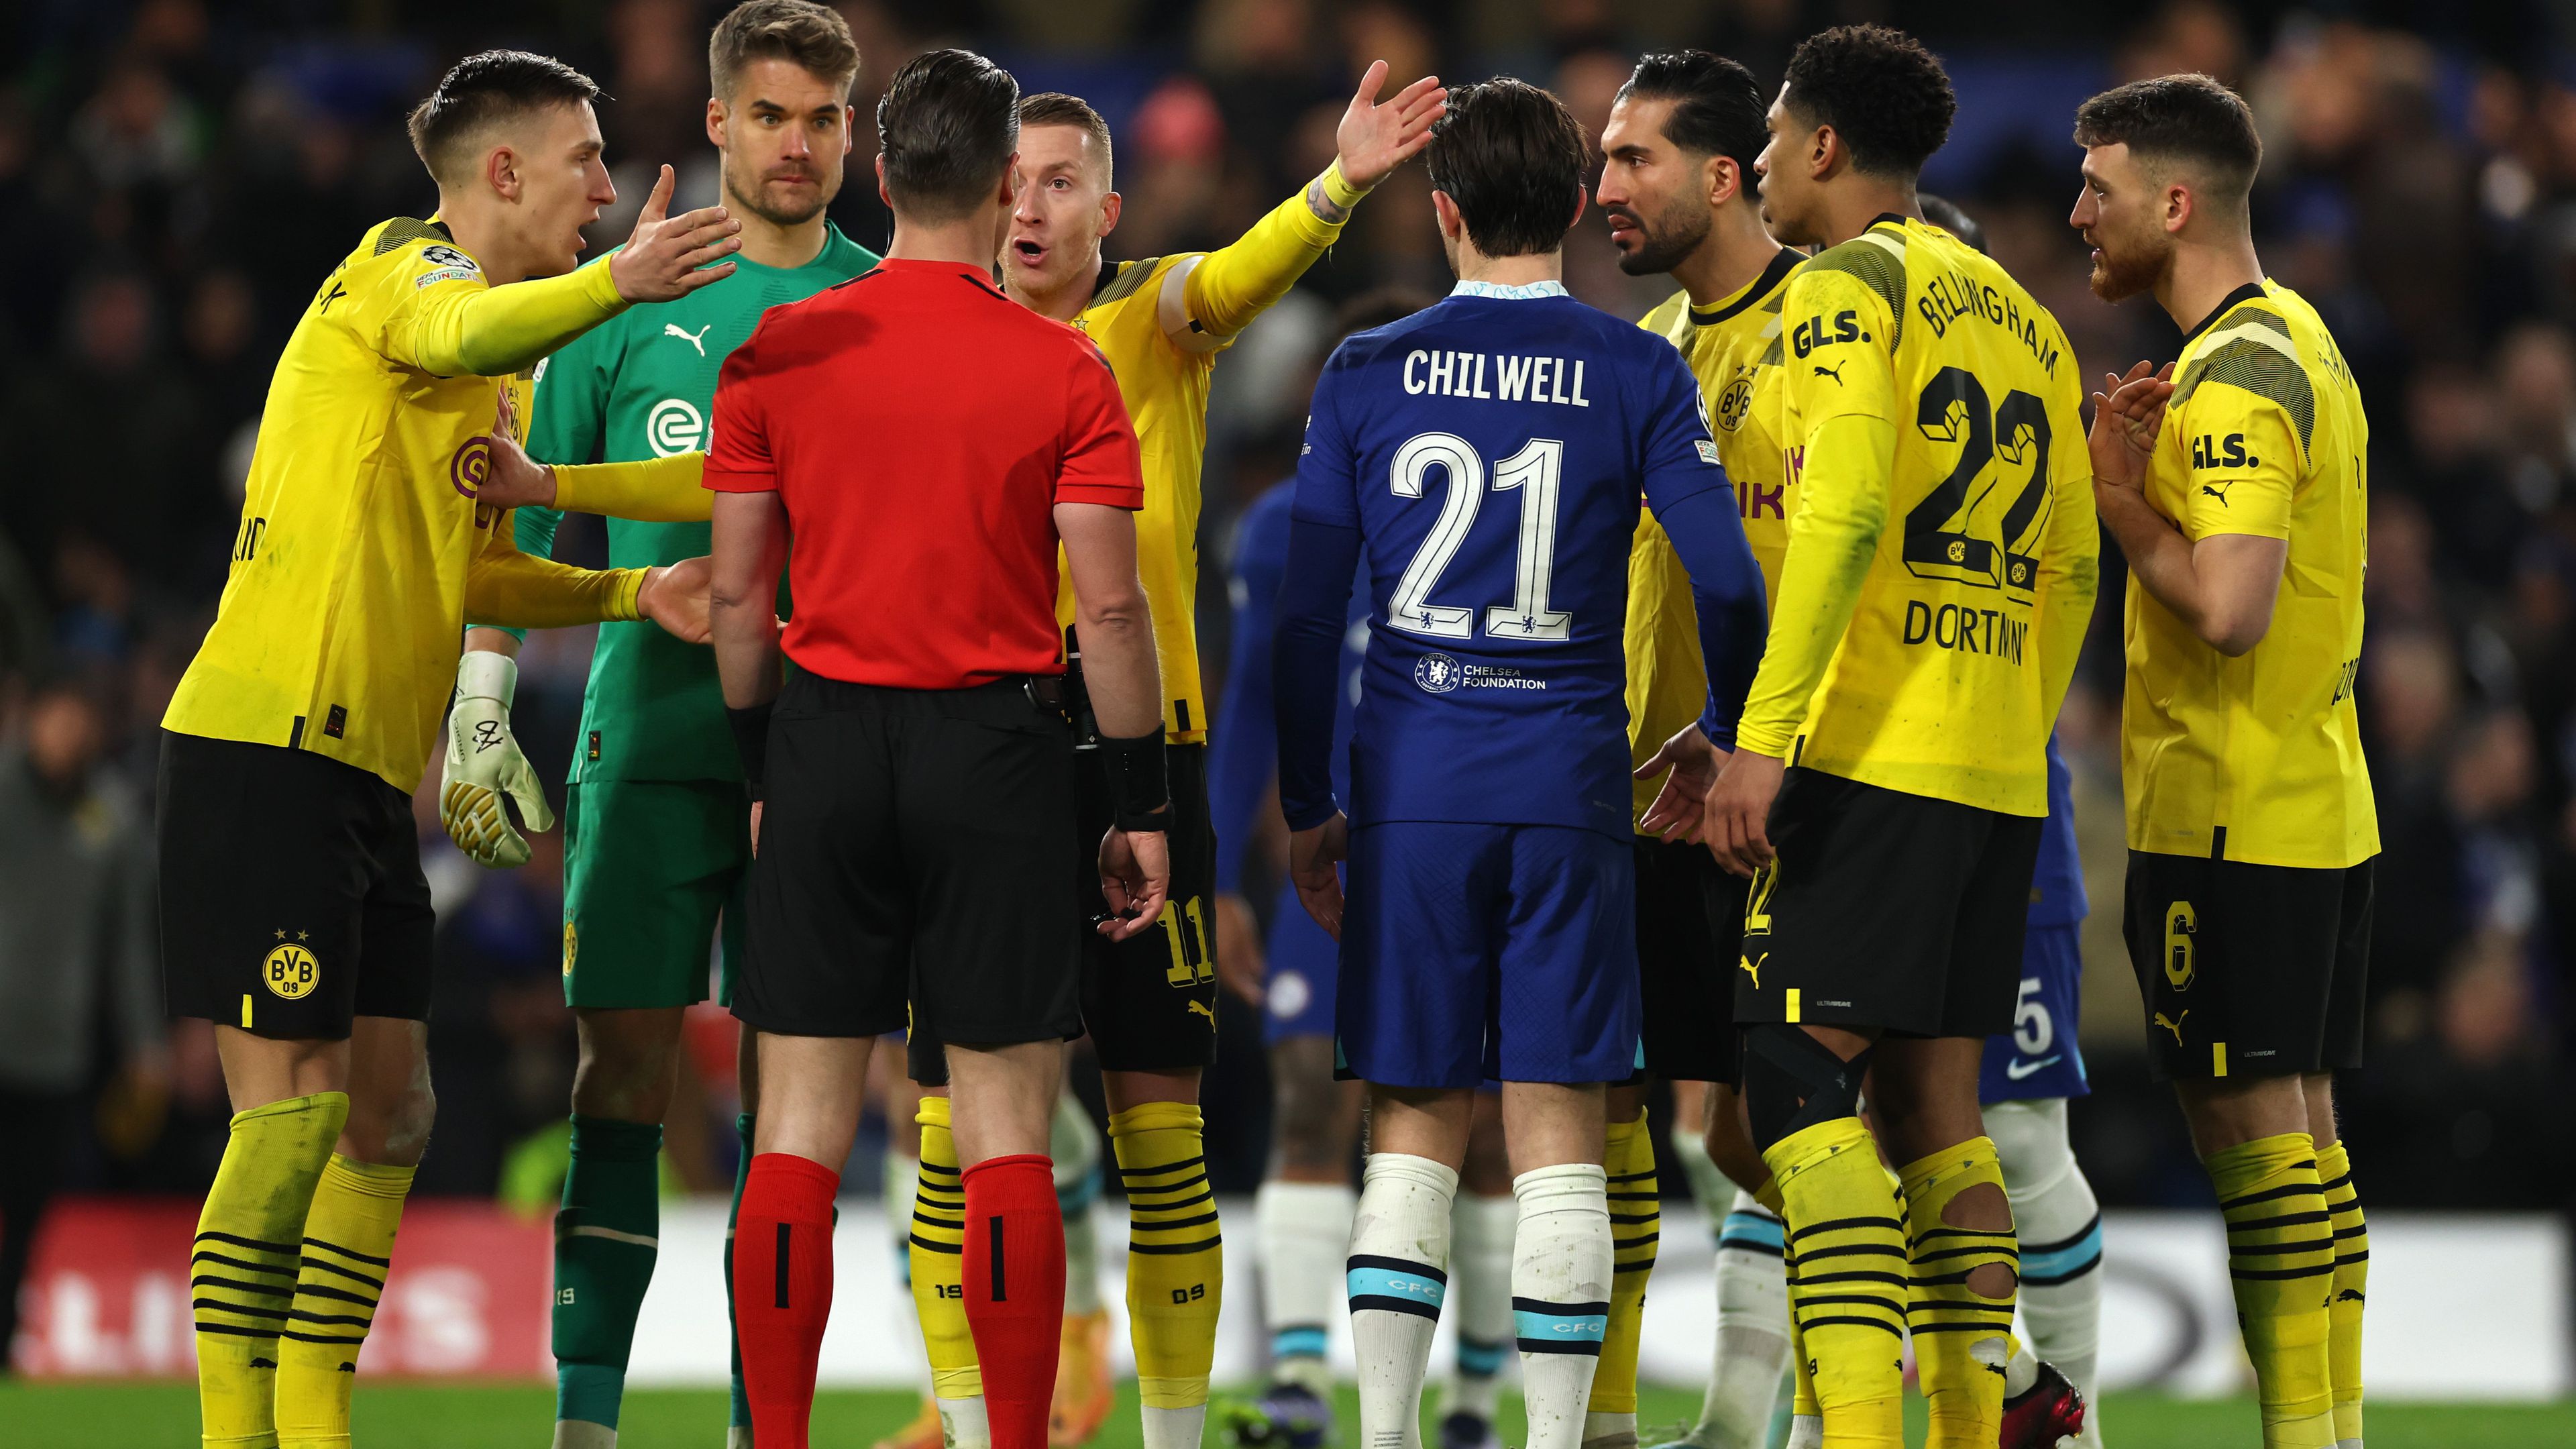 A párharcot eldöntő jelenet: a második félidő elején Kai Havertz kapufára rúgta a büntetőt, a játékvezető azonban megismételtette a tizenegyest – ez pedig a Chelsea továbbjutását eredményezte.